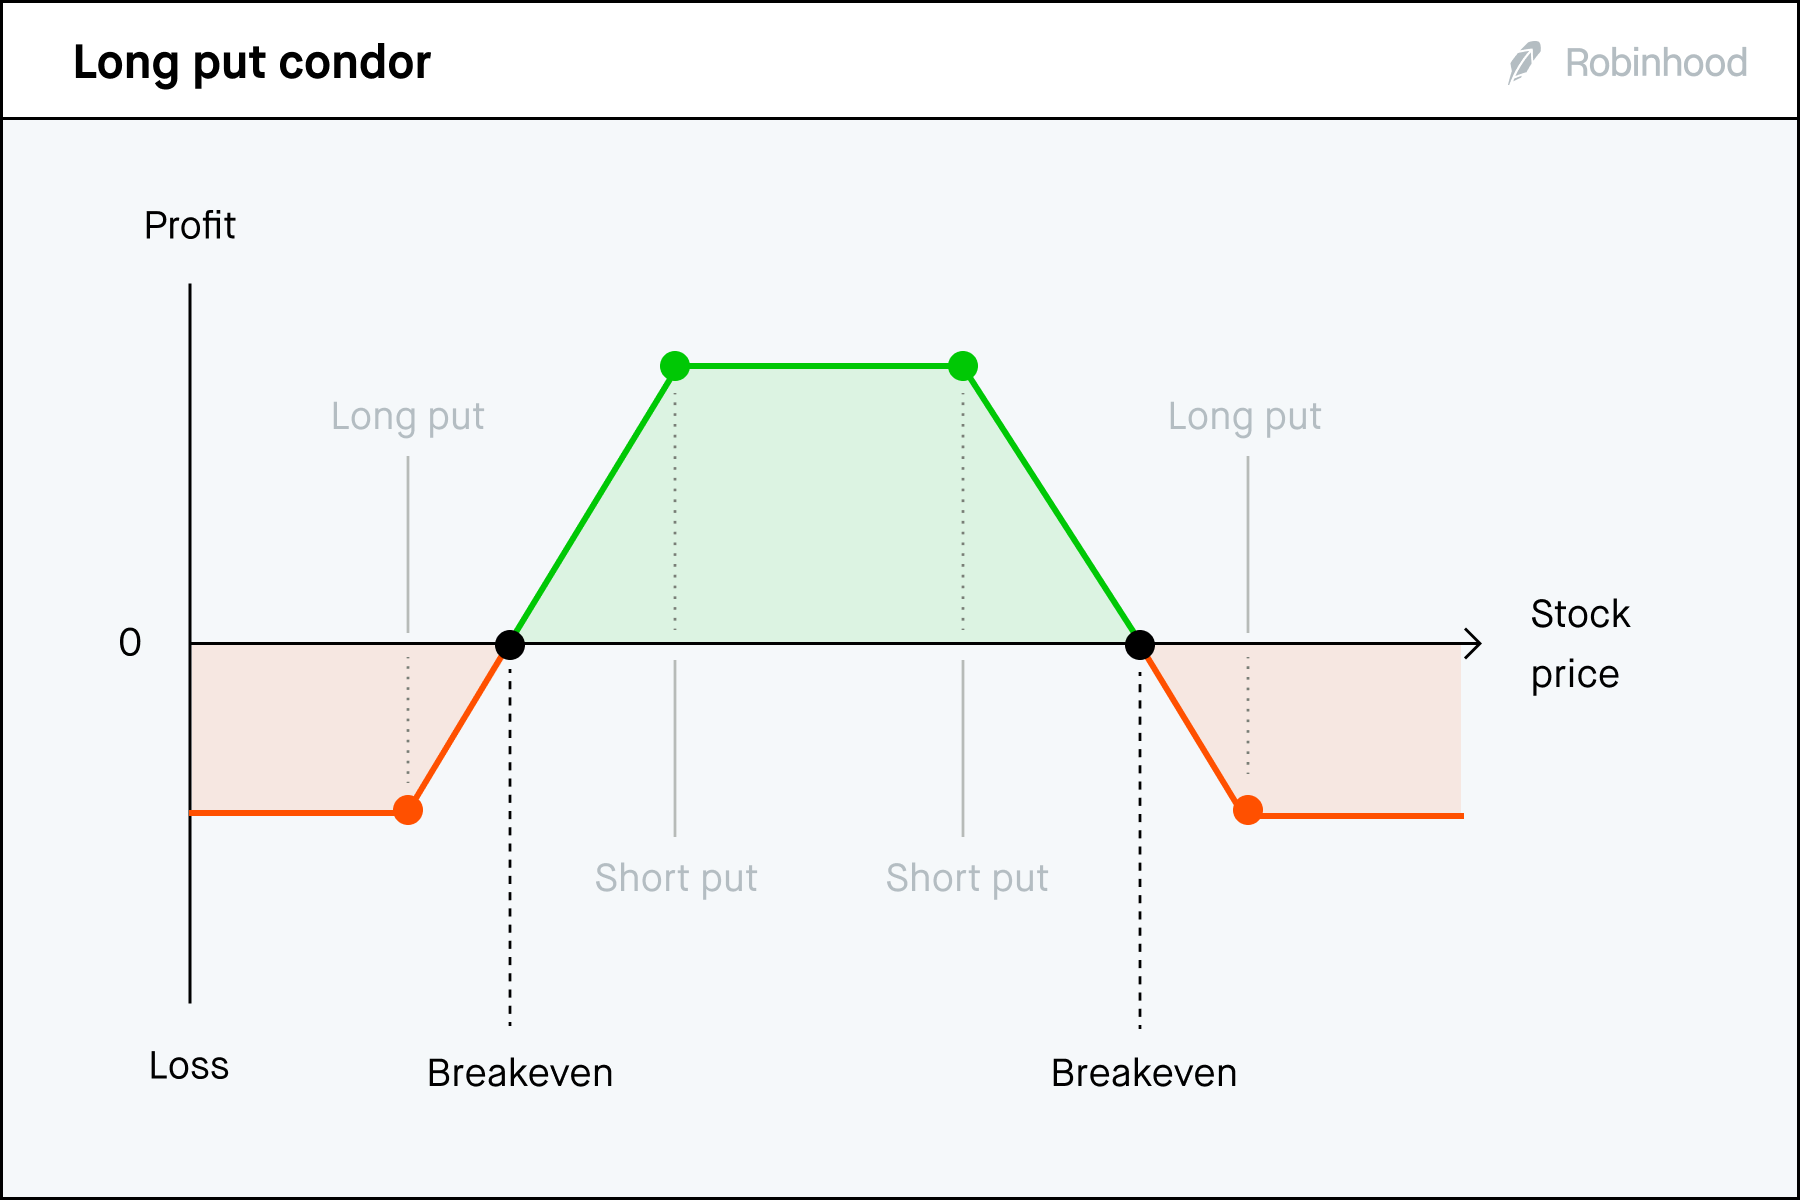 Long put condor P/L chart 3x